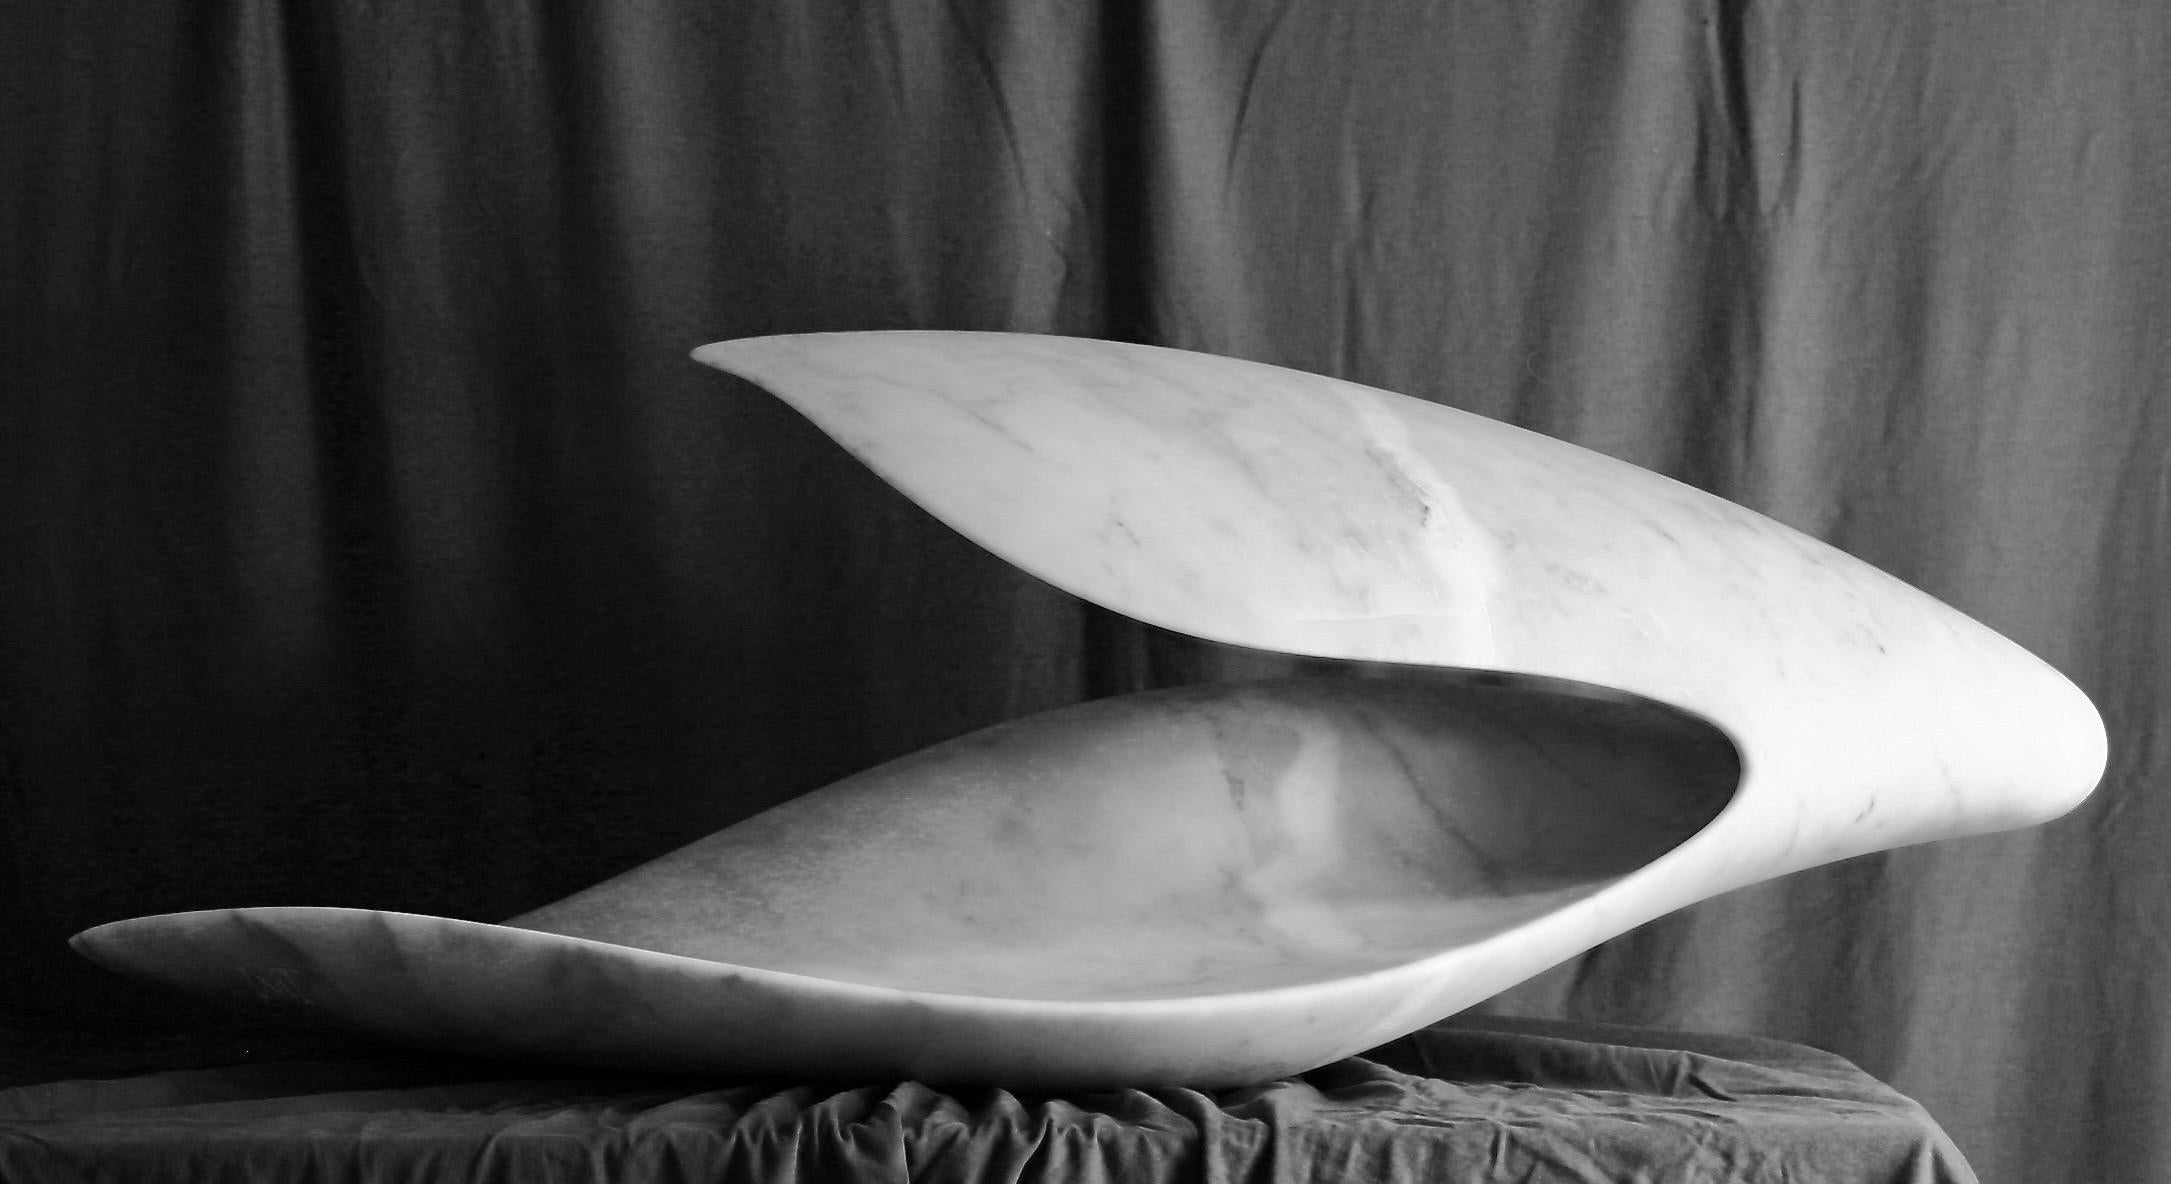 Cloud des britischen Bildhauers Ian Thomson wurde aus Colonnata-Marmor, Grigio Nuvolato, geschaffen. Thomsons Reisen haben ihn bei seiner Arbeit inspiriert. Er hat einen Abschluss in Architektur und Philosophie und beschreibt seine Einflüsse als